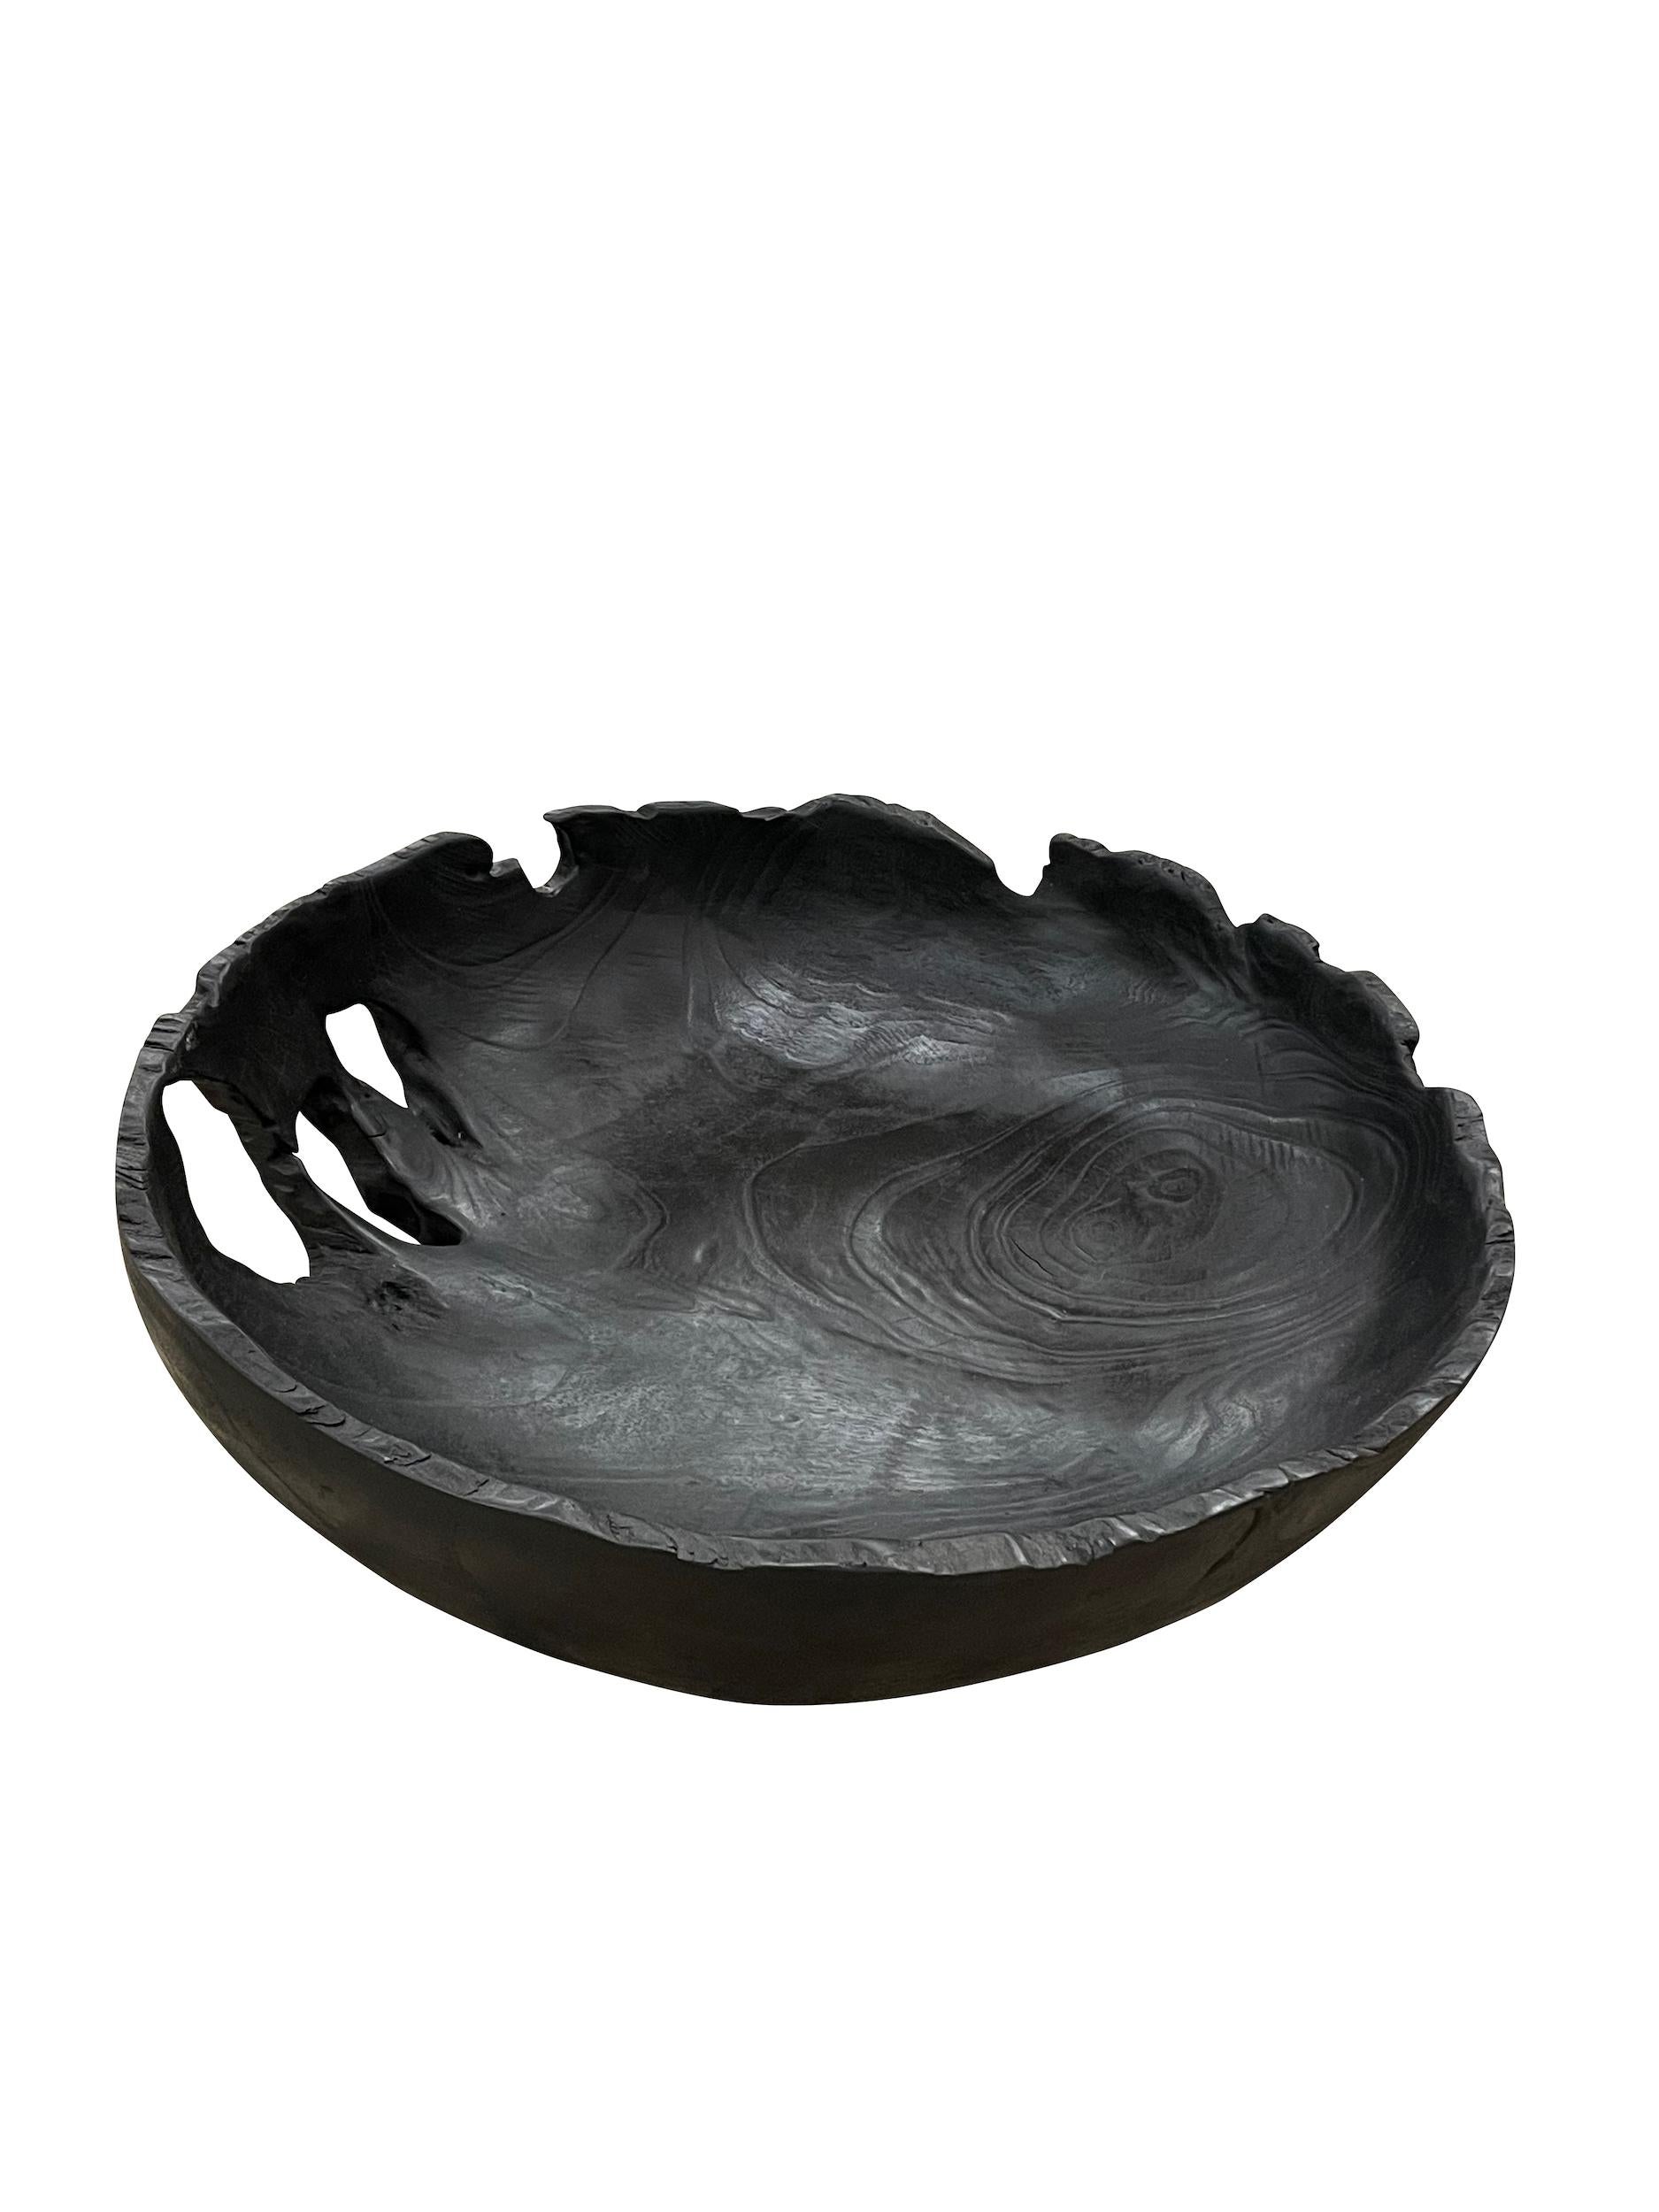 Contemporary Chinese ebonized teak organic shaped bowl.
